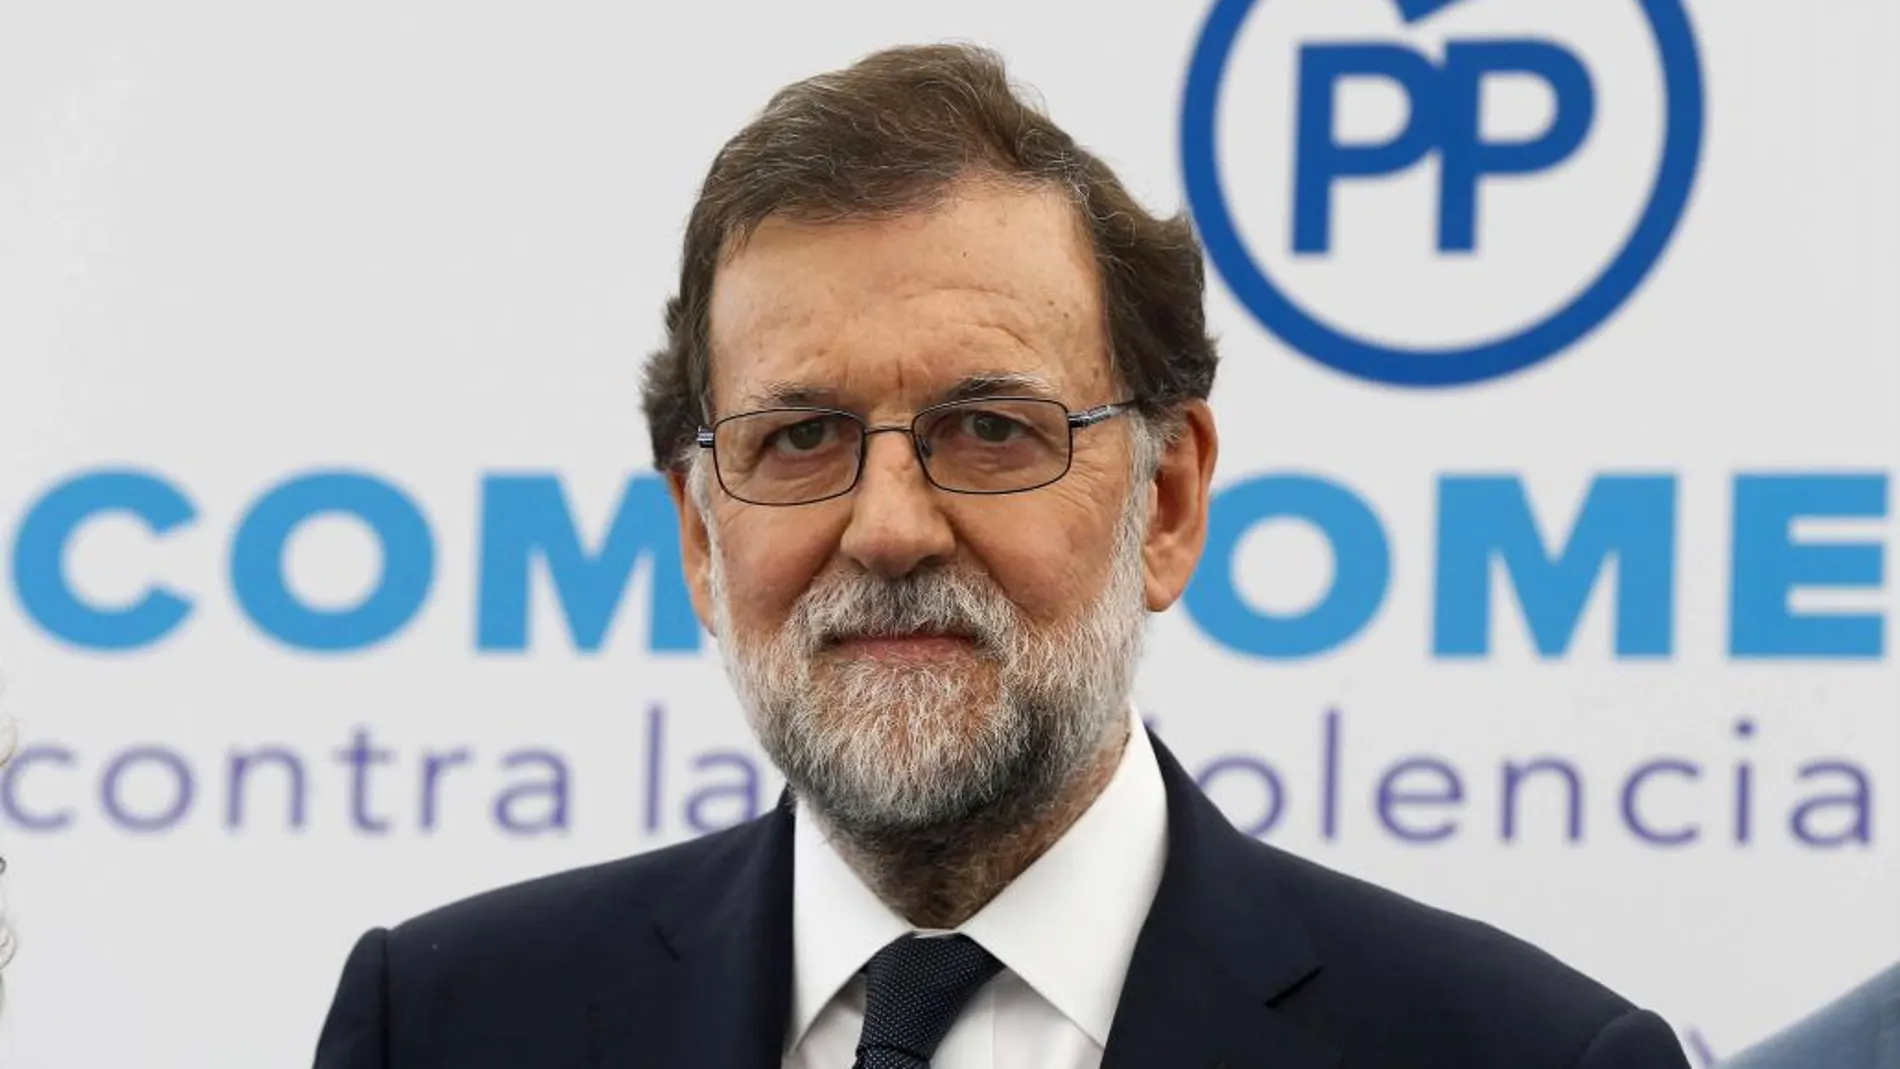 El presidente del Gobierno, Mariano Rajoy, durante un acto de apoyo al Pacto de Estado contra la Violencia de Género organizado por el PP